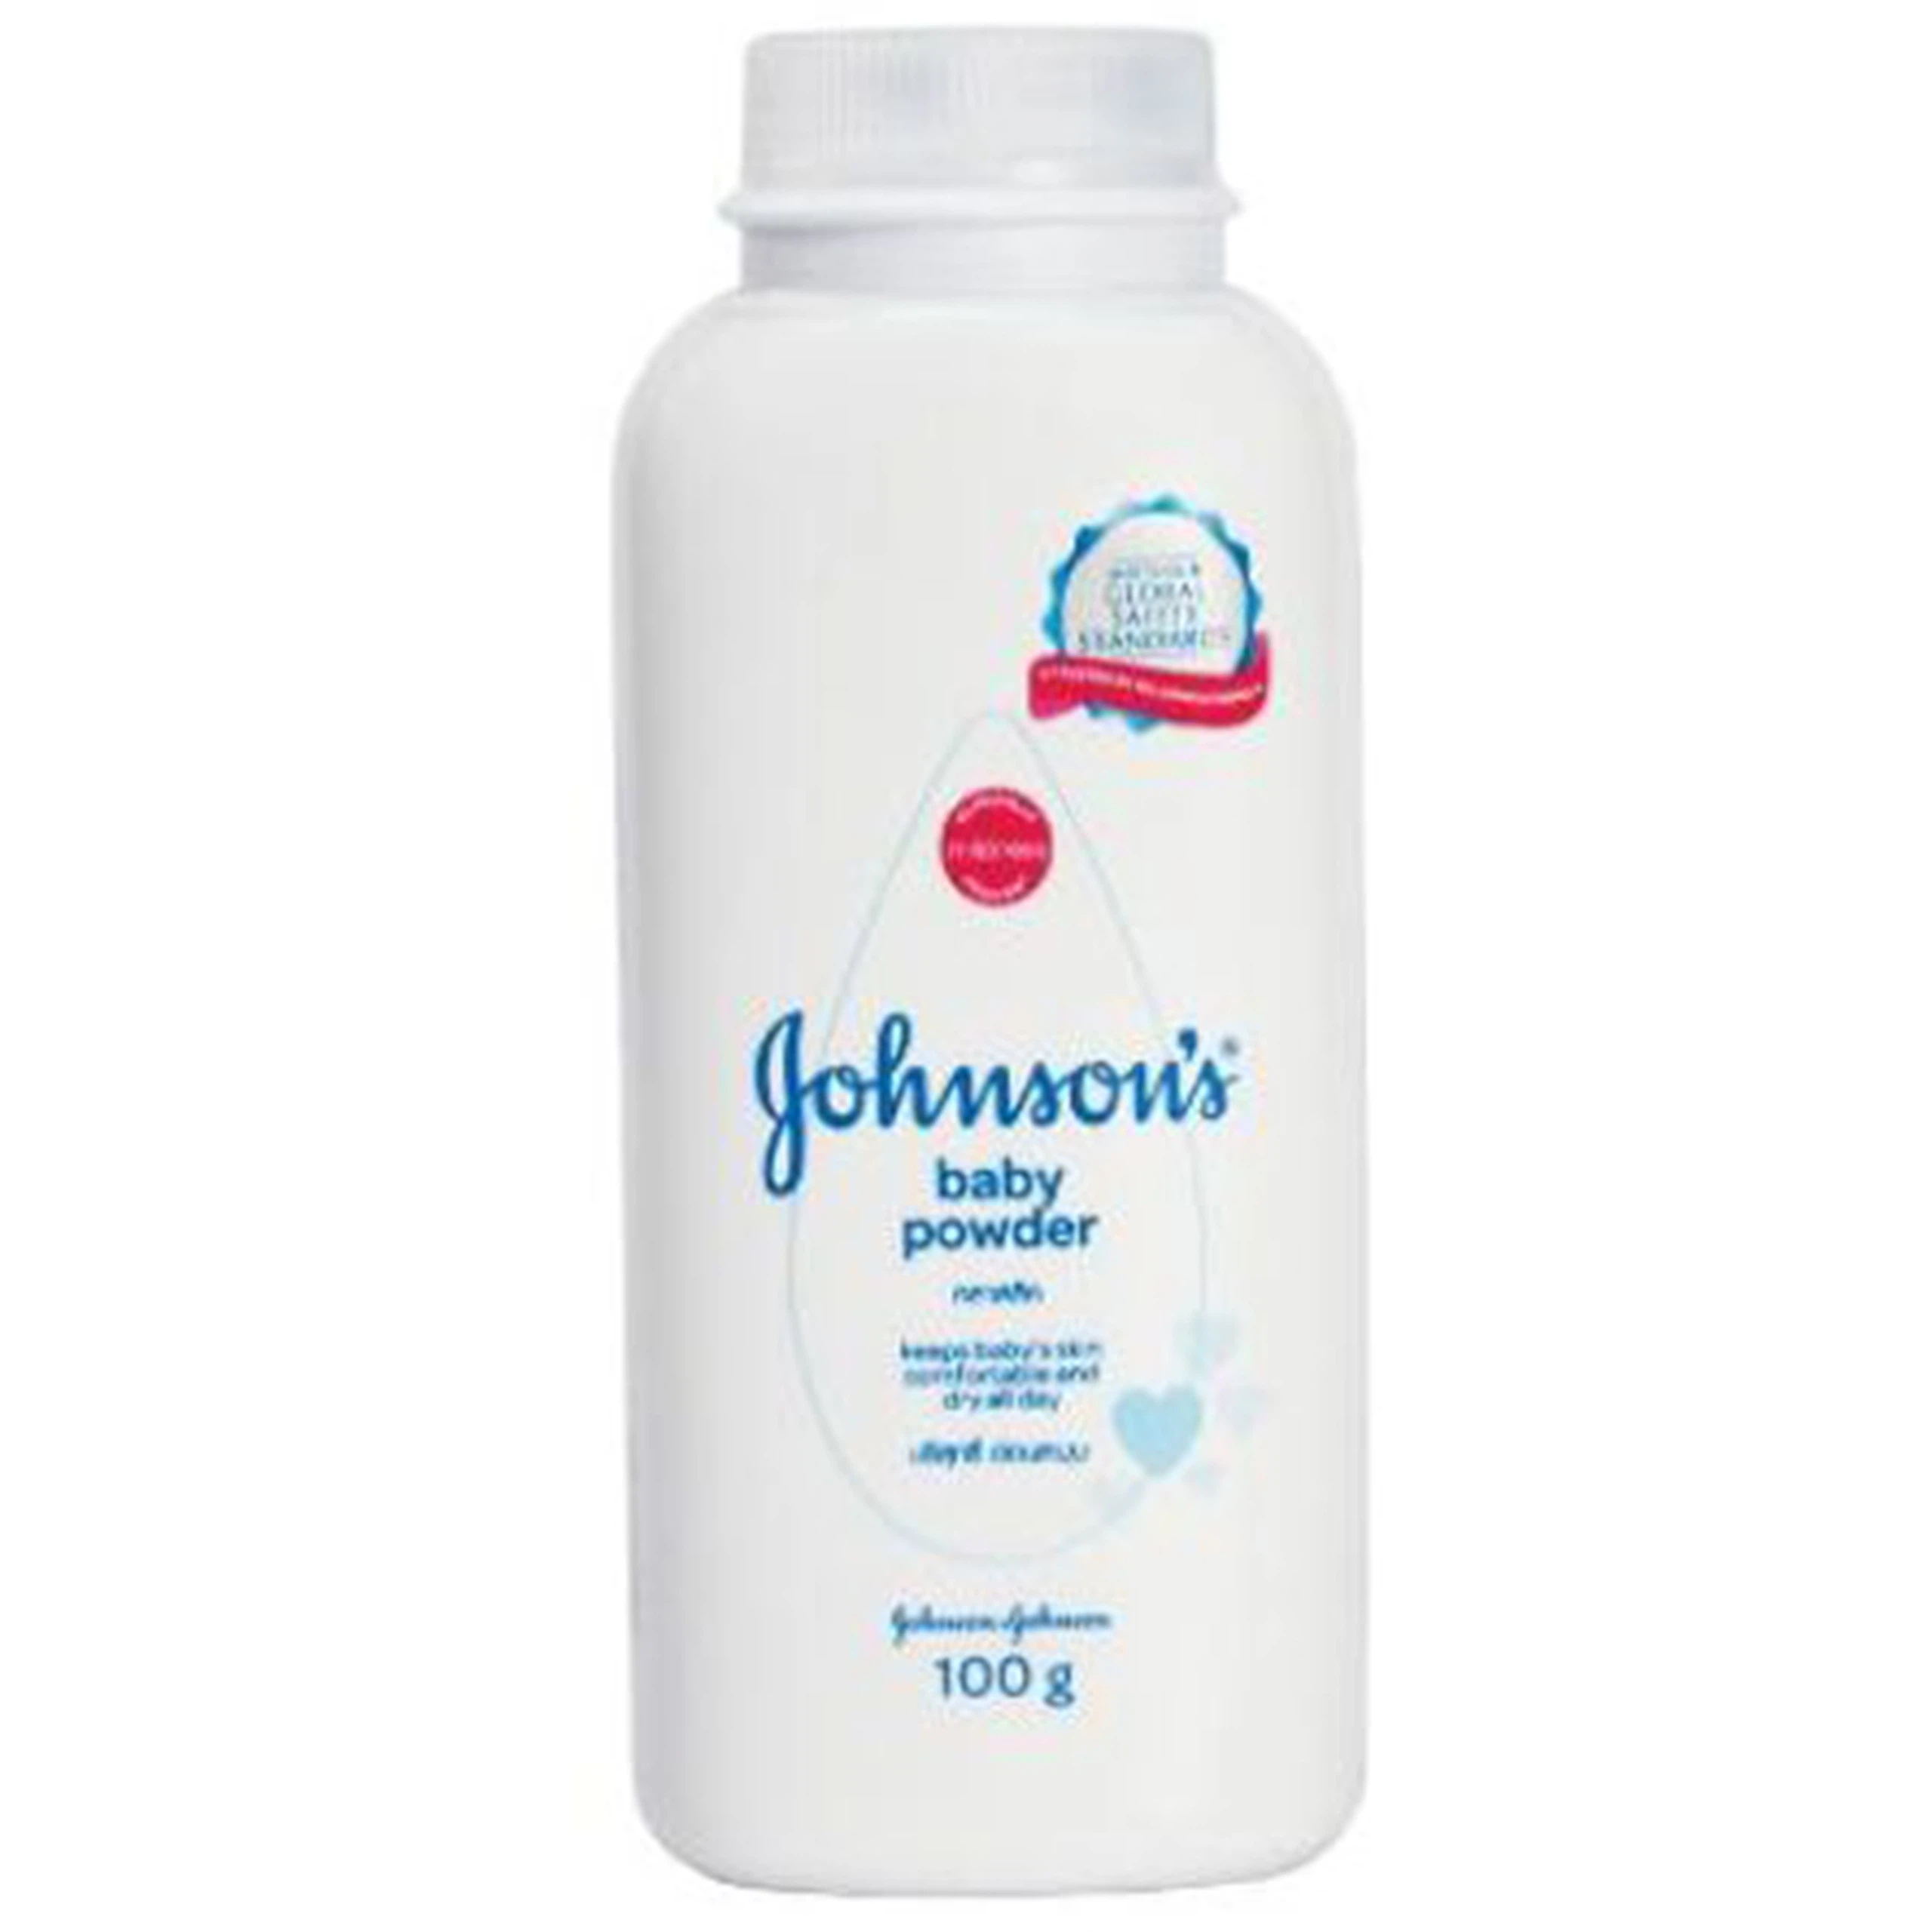 Phấn Johnson’s Baby Powder hút ẩm, giảm nguy cơ bị viêm da, mẩn đỏ (100g)